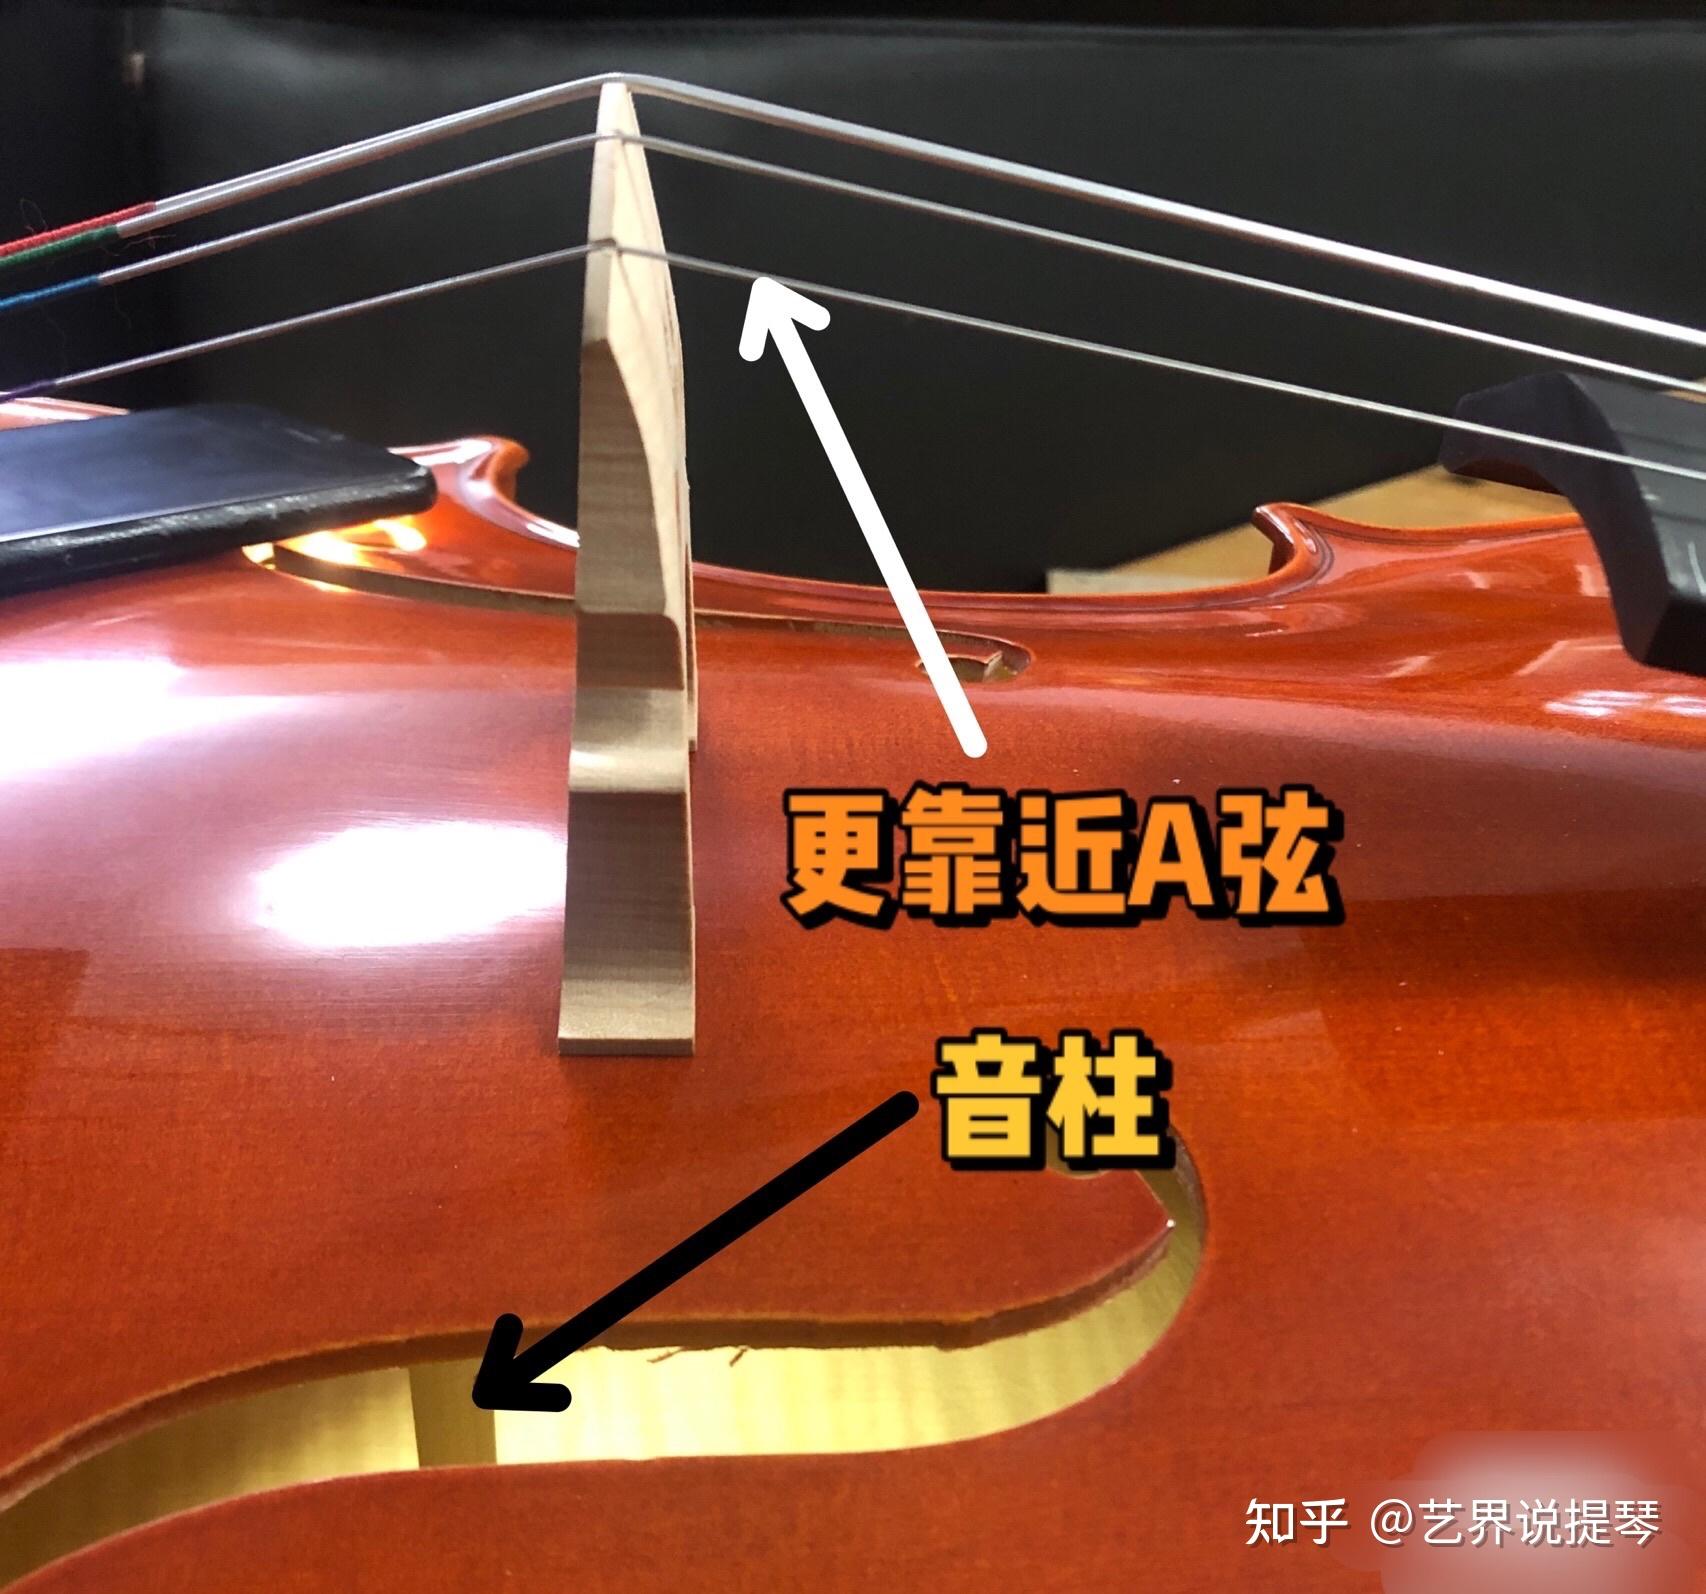 大提琴音柱的最佳位置图片